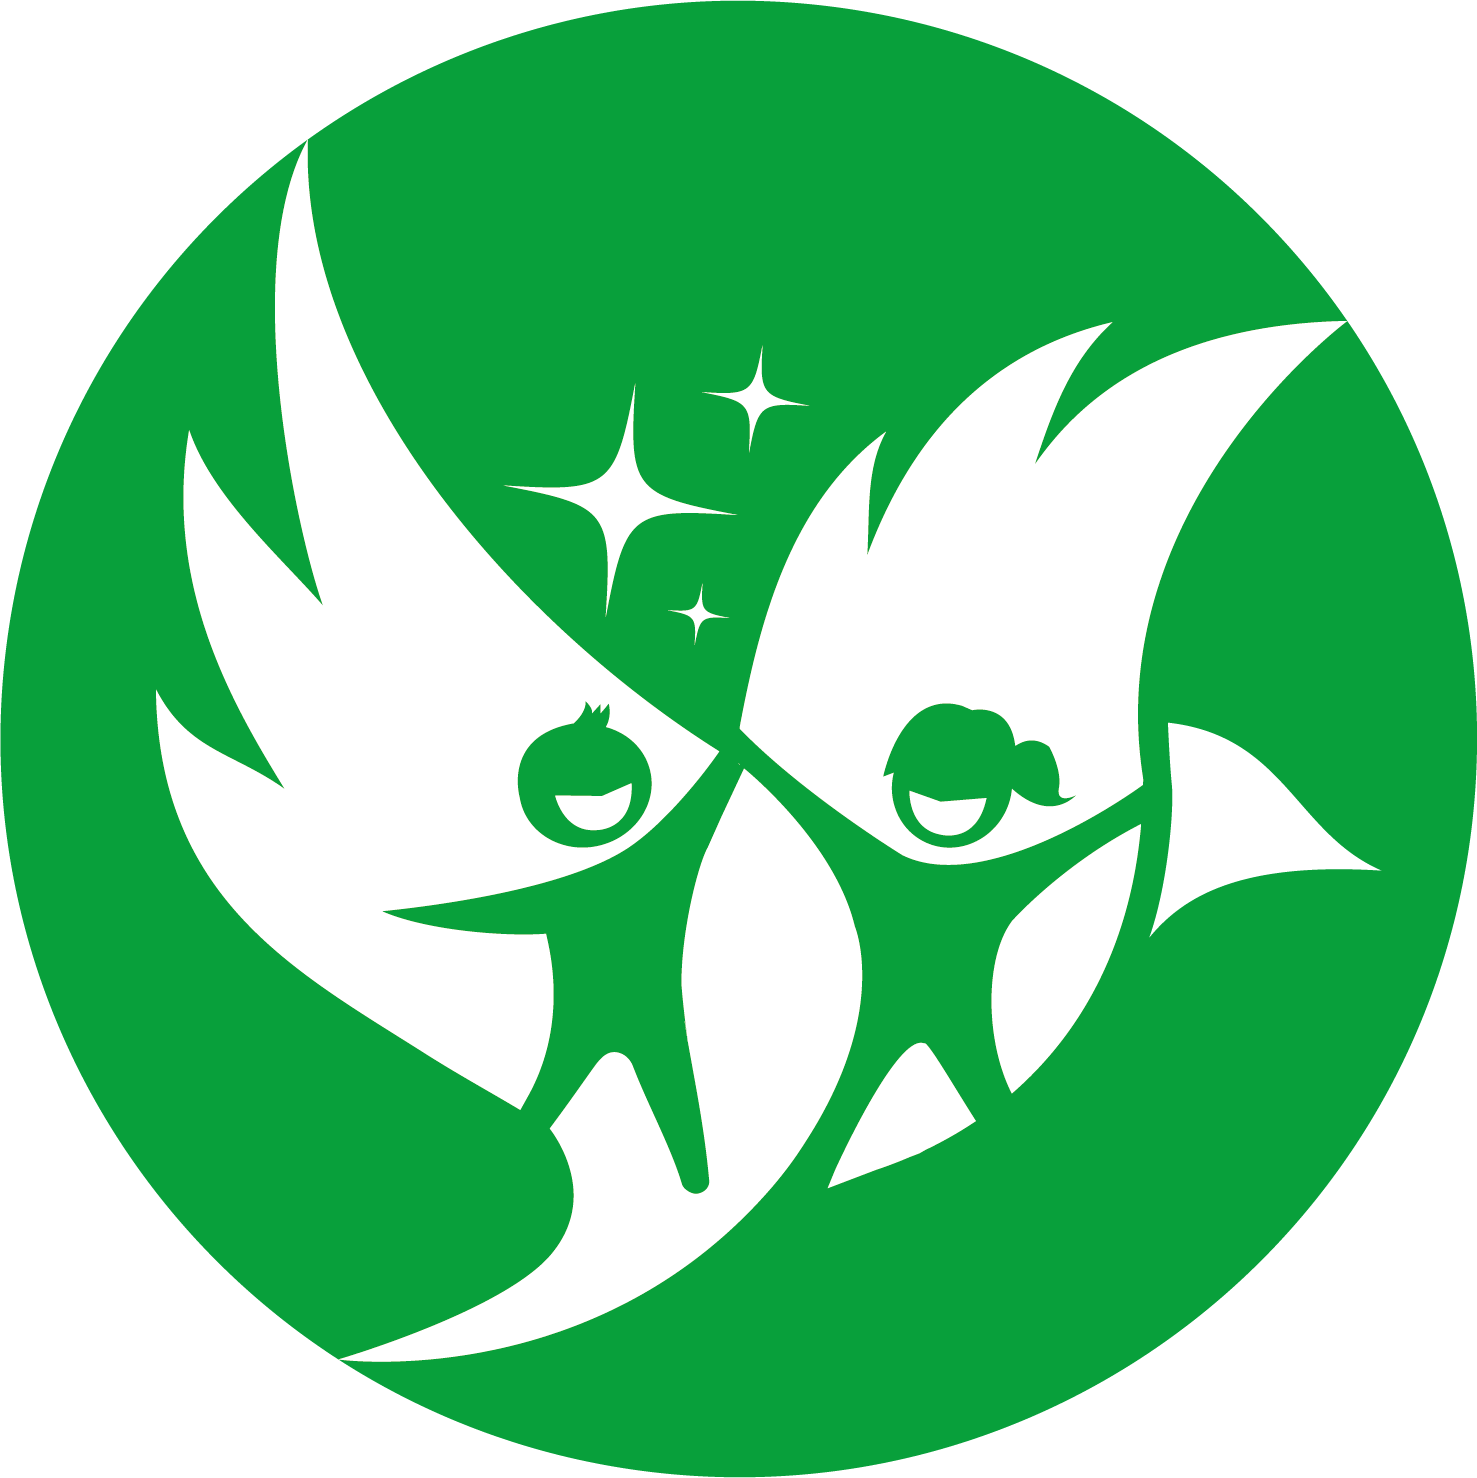 Kindcentrum De Feniks logo